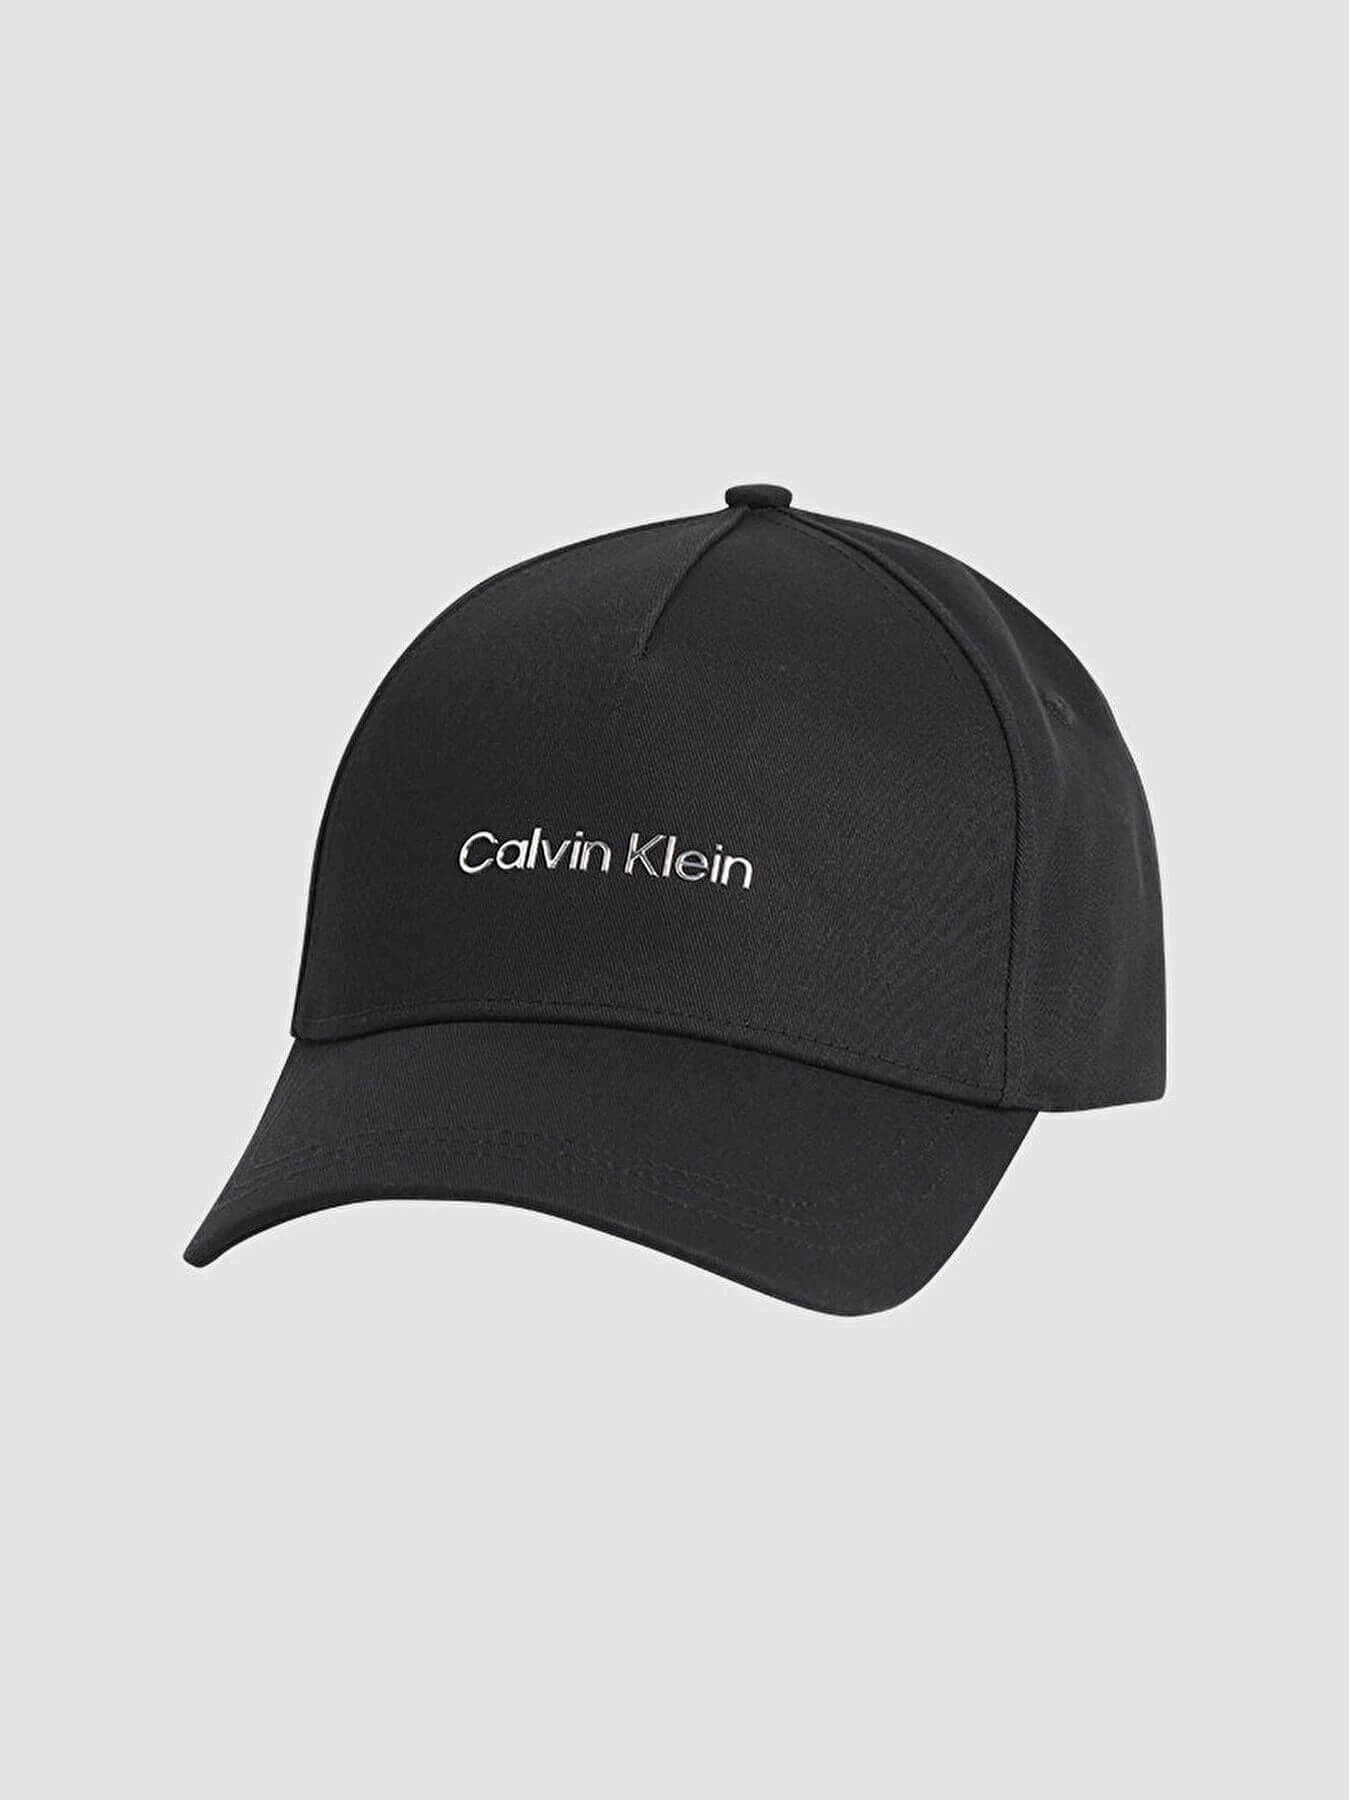 Gorra Calvin Klein Negro - Talla: Única